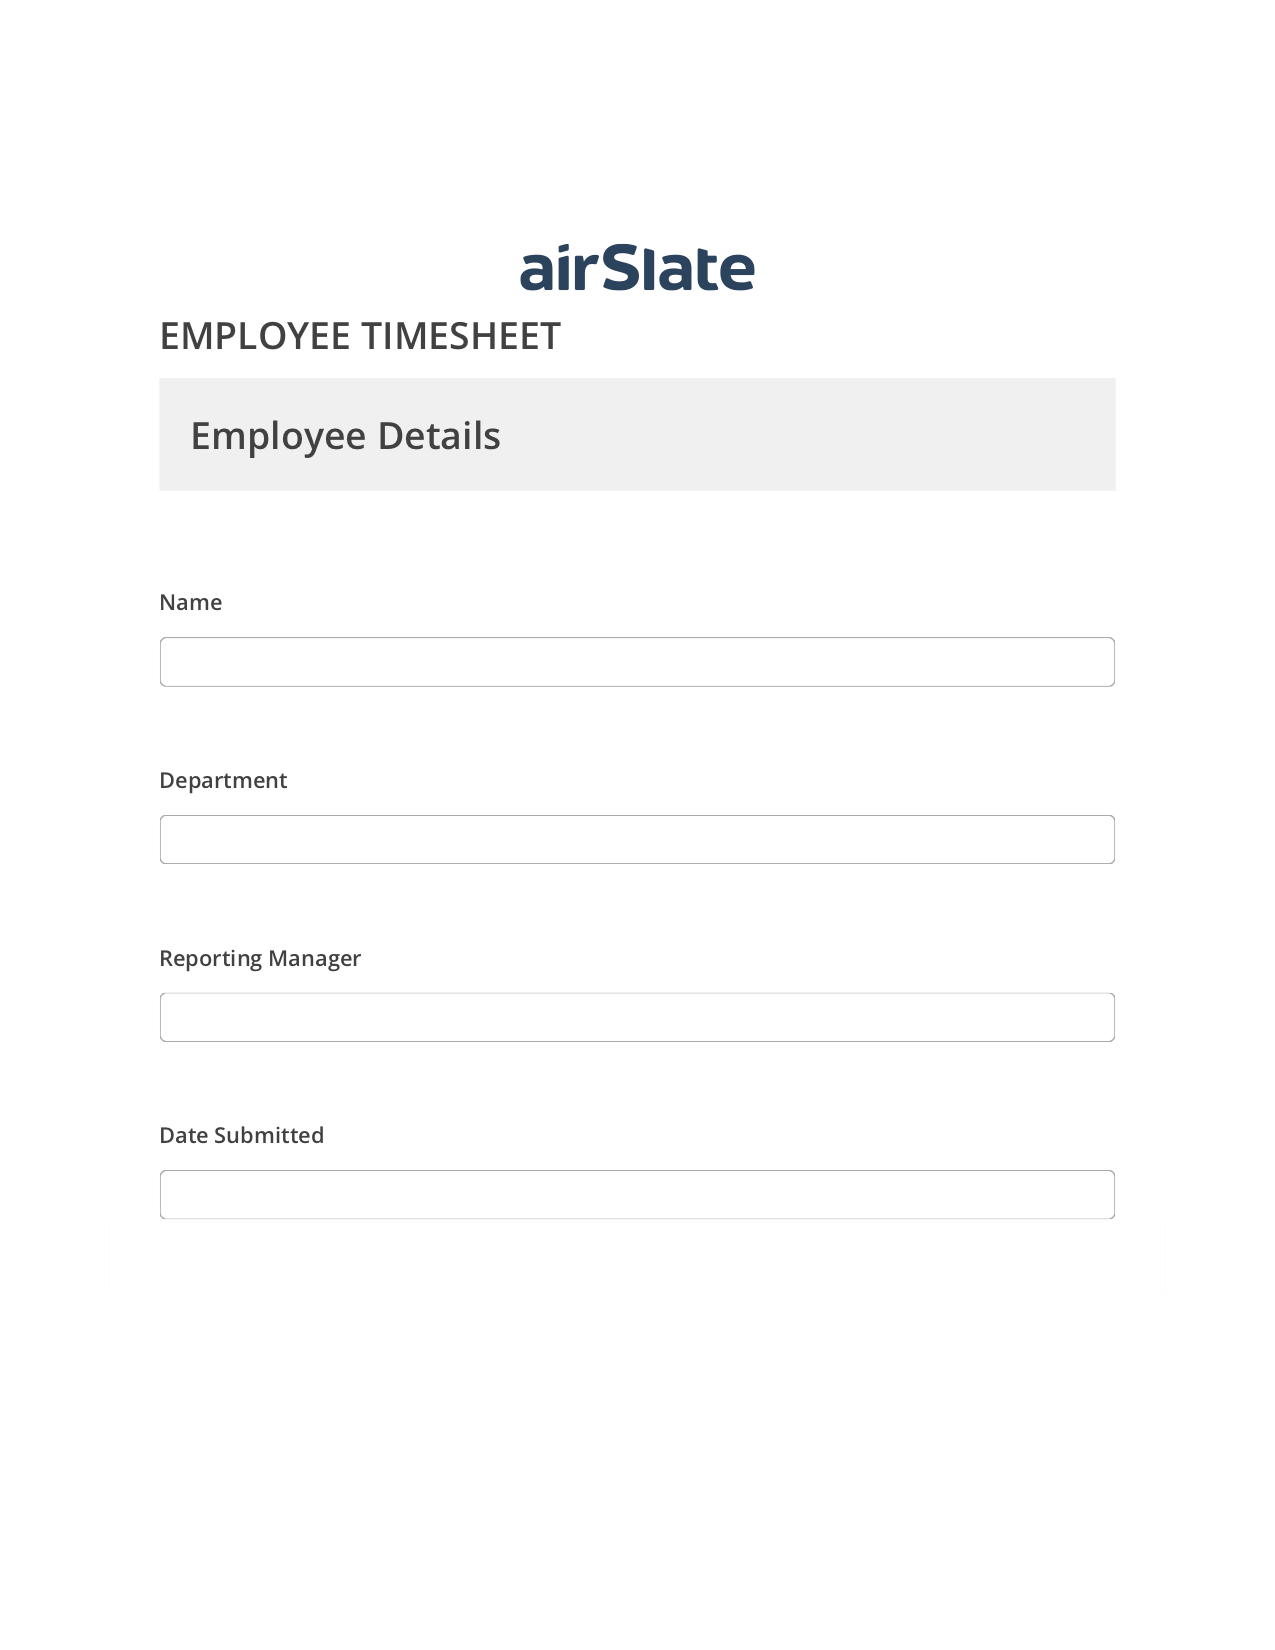 Employee Timesheet Flow Create slate bot